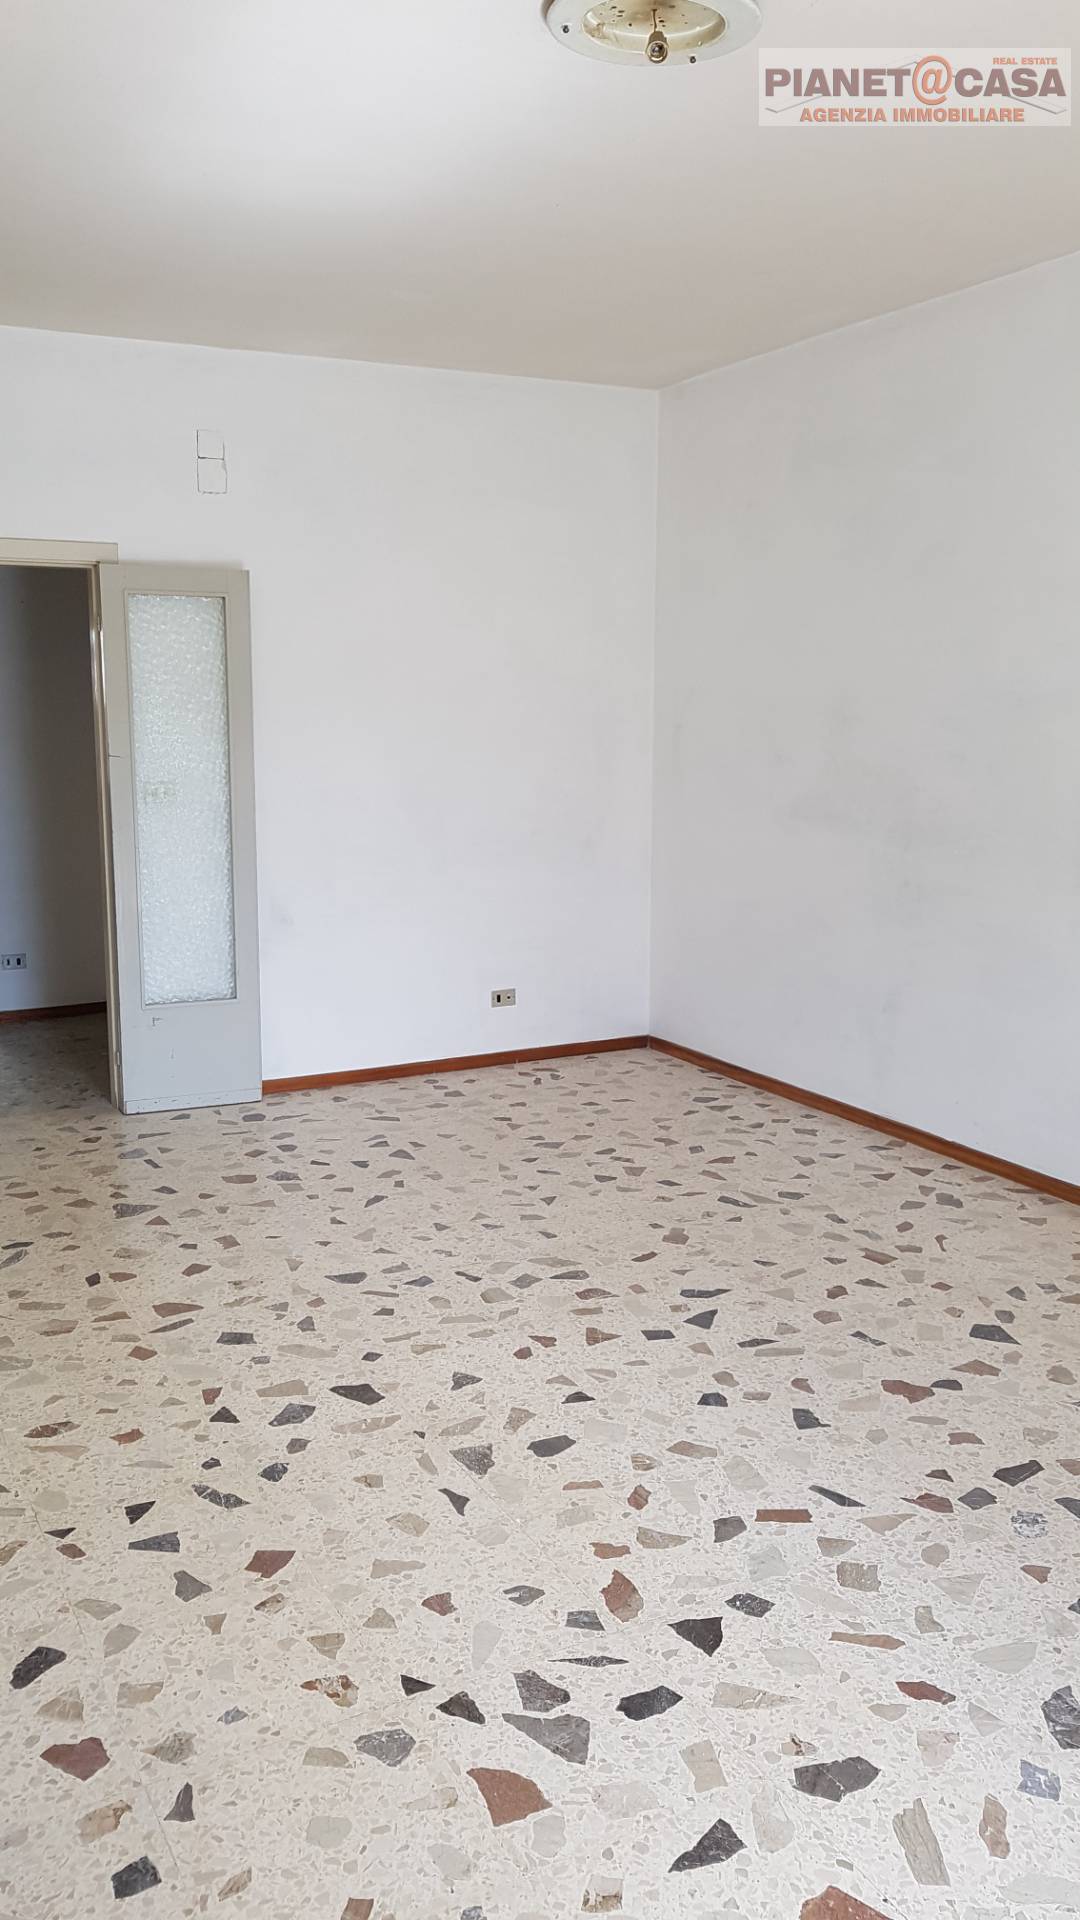 Appartamento in vendita a Castel di Lama, 5 locali, prezzo € 139.000 | PortaleAgenzieImmobiliari.it